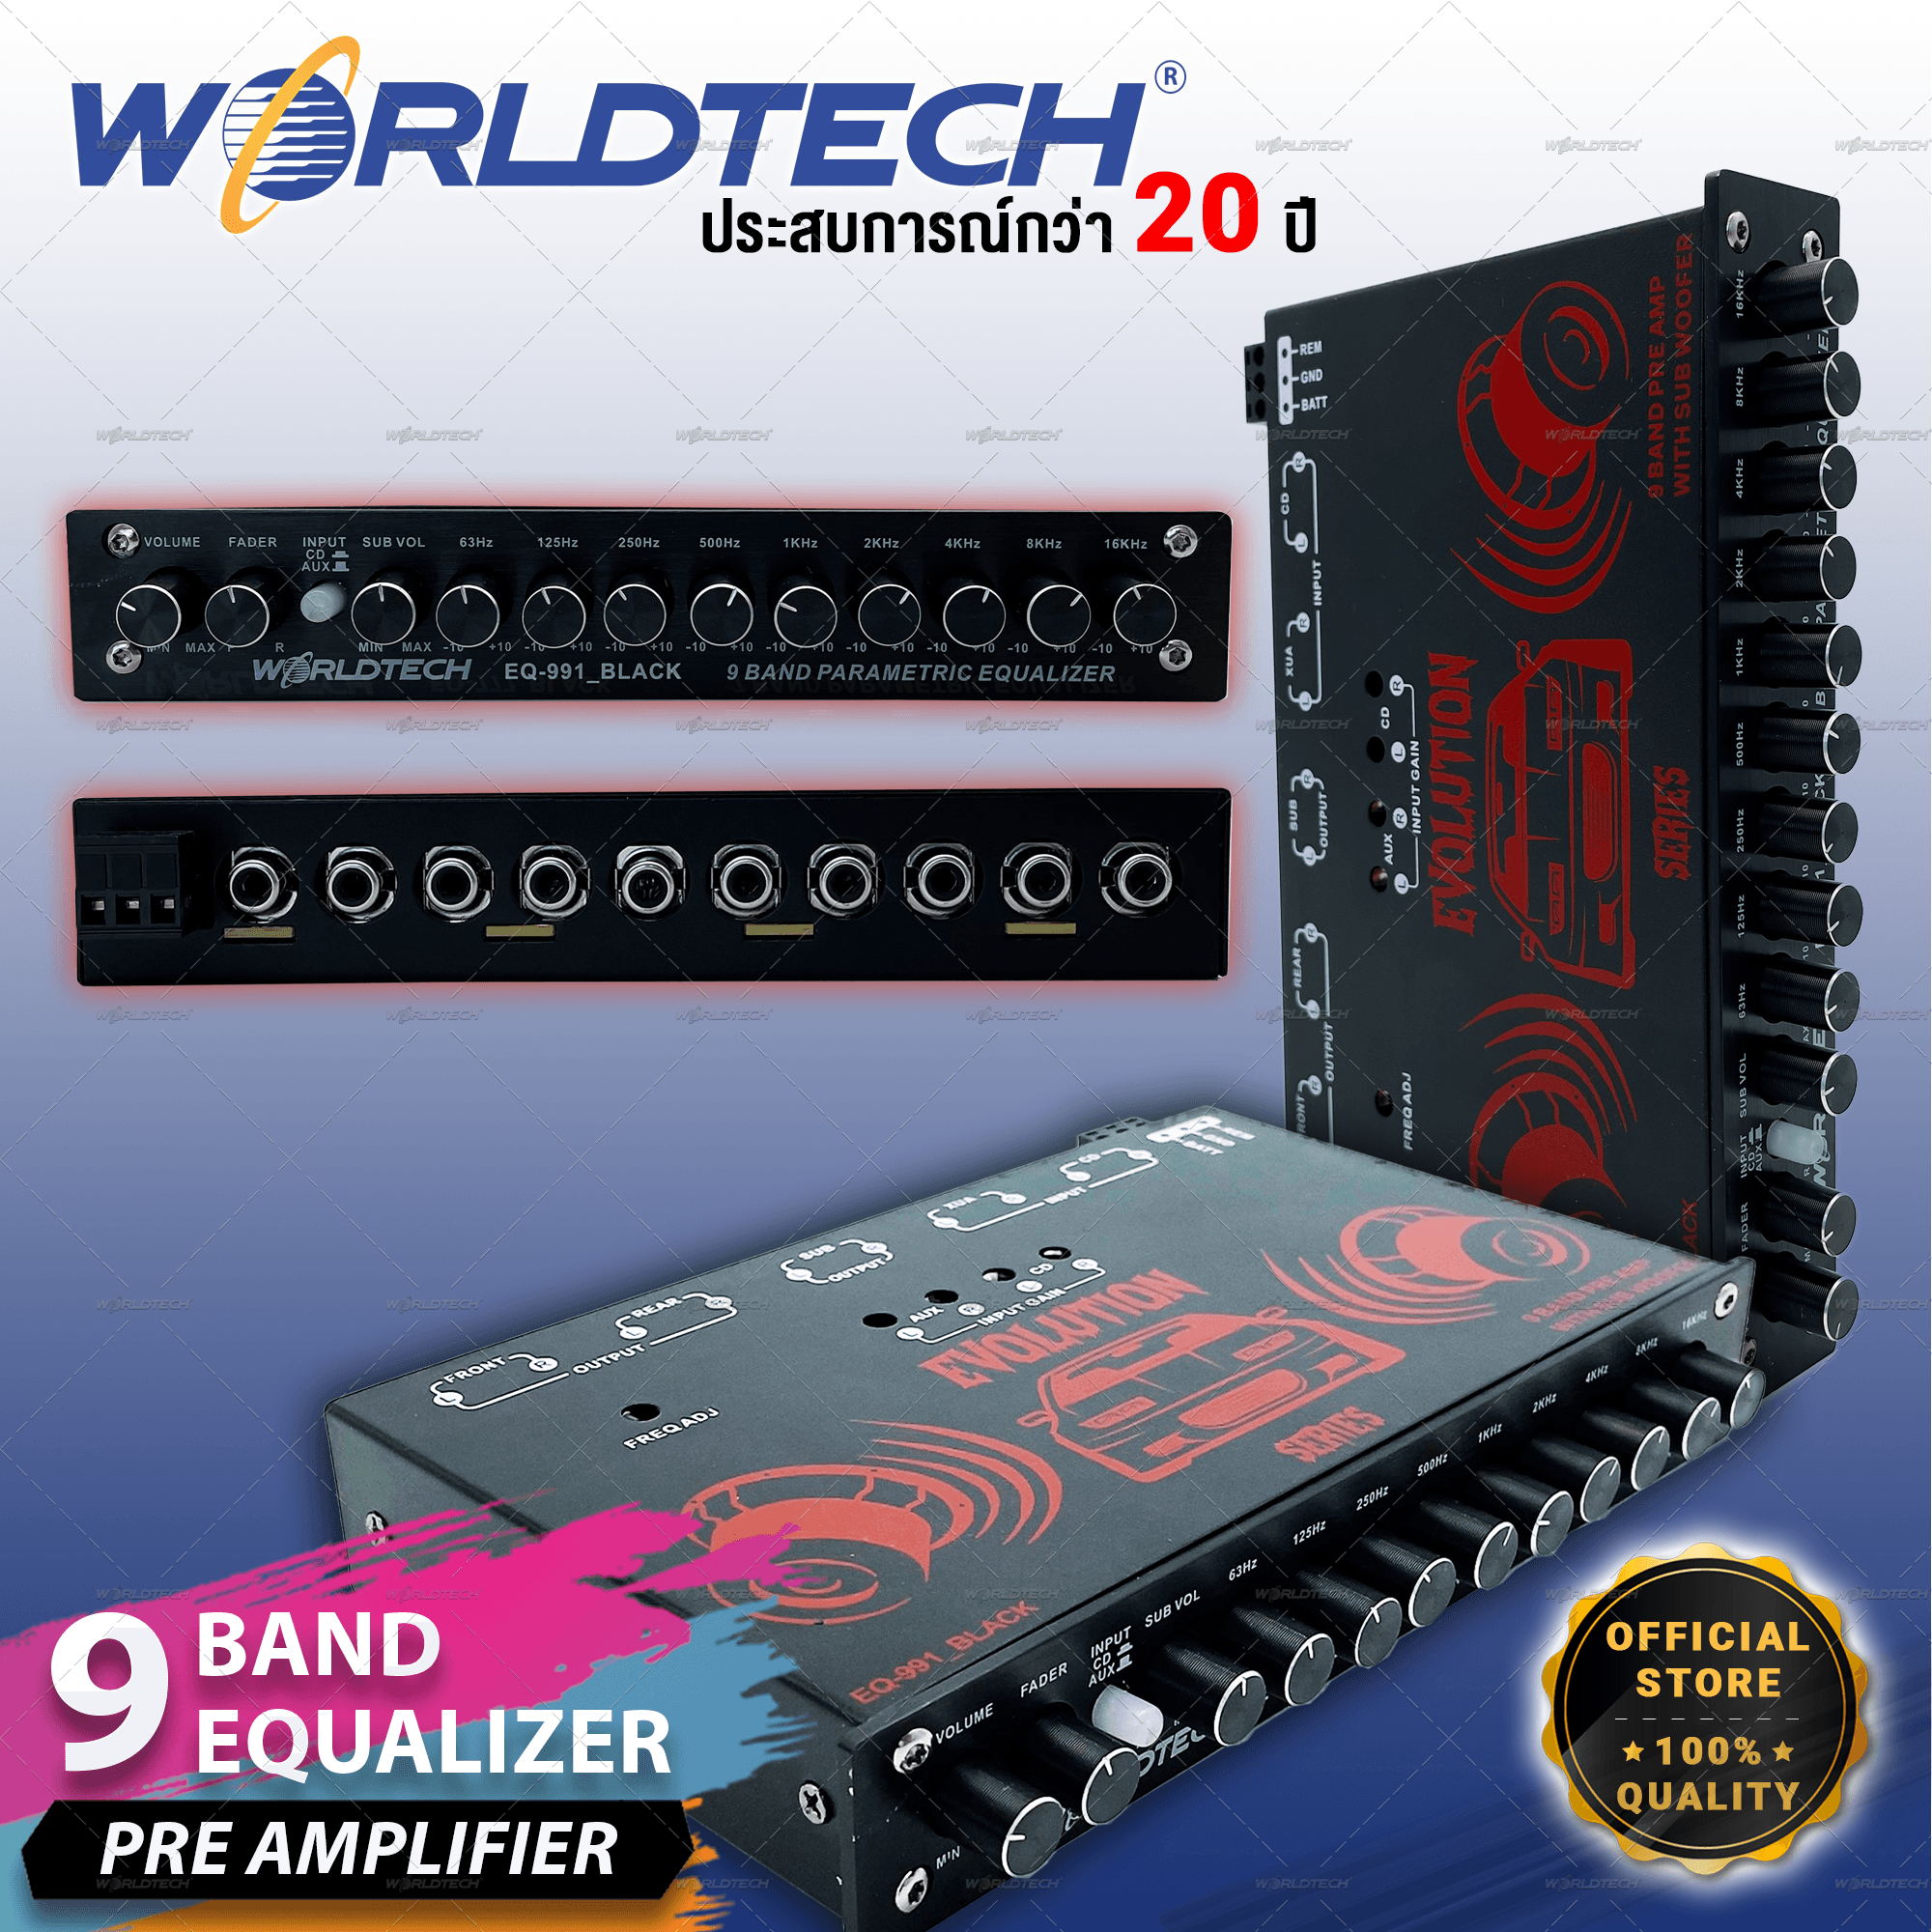 Worldtech รุ่น EQ-991_Black ปรีแอมป์รถยนต์ อีควอไลเซอร์ Equalizer 9 band